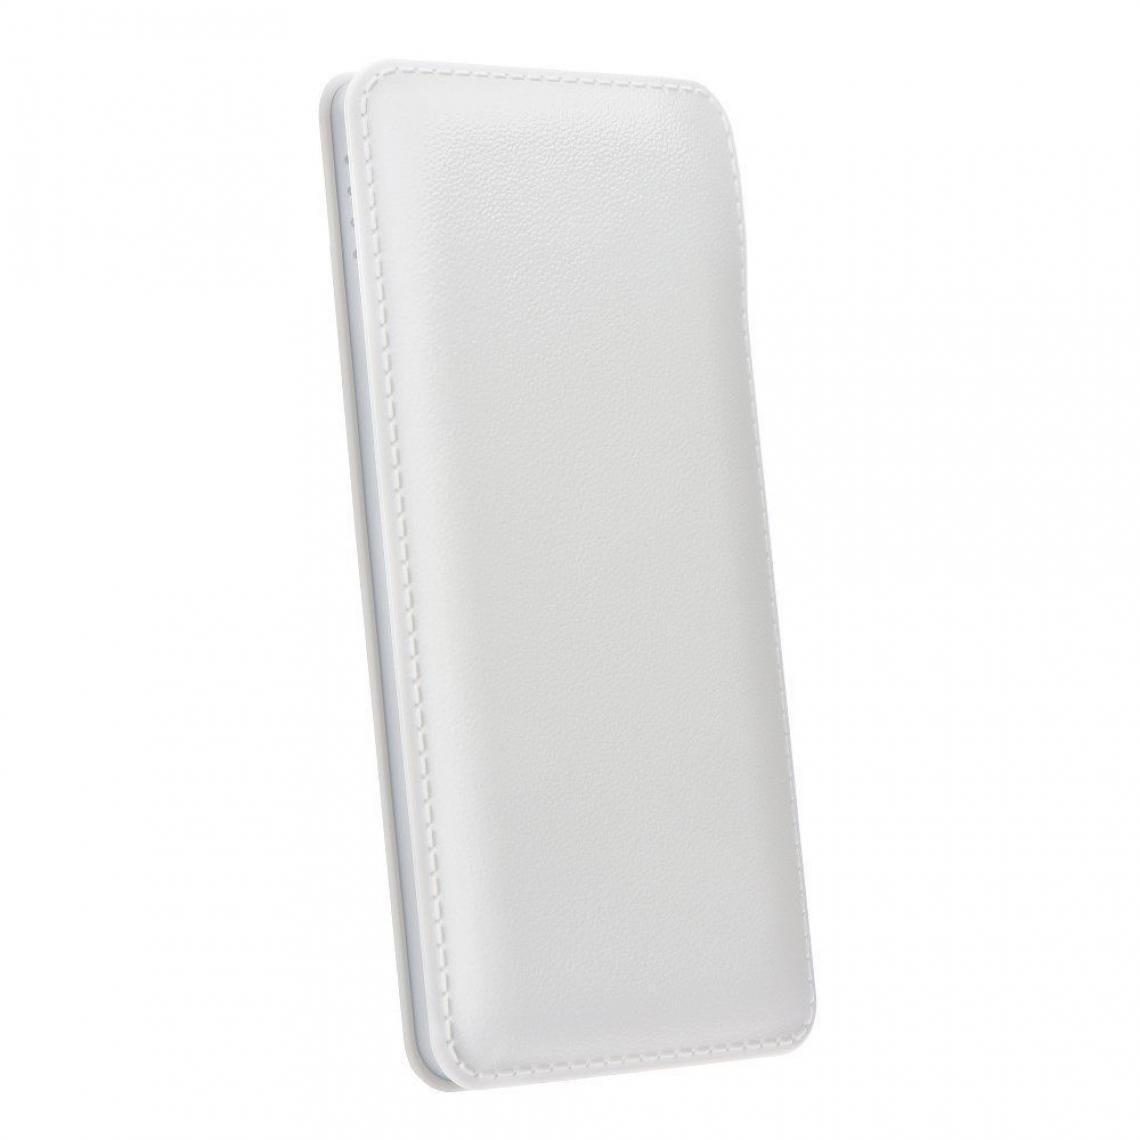 Ozzzo - Chargeur batterie externe 20000 mAh powerbank ozzzo blanc pour SONY Xperia 10 Plus 2019 - Autres accessoires smartphone